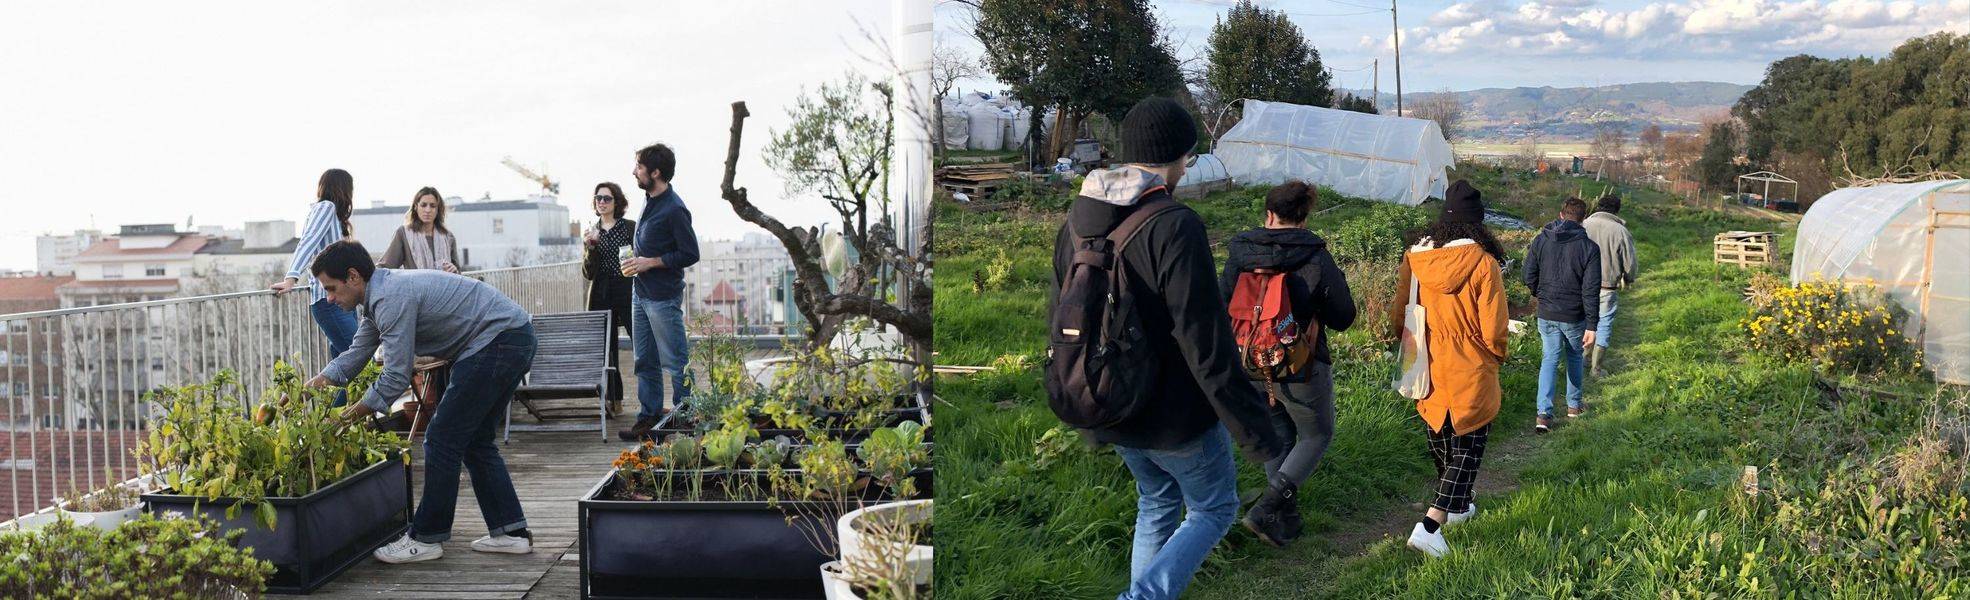 Volunteers im Permakultur-Garten-Projekt in Spanien